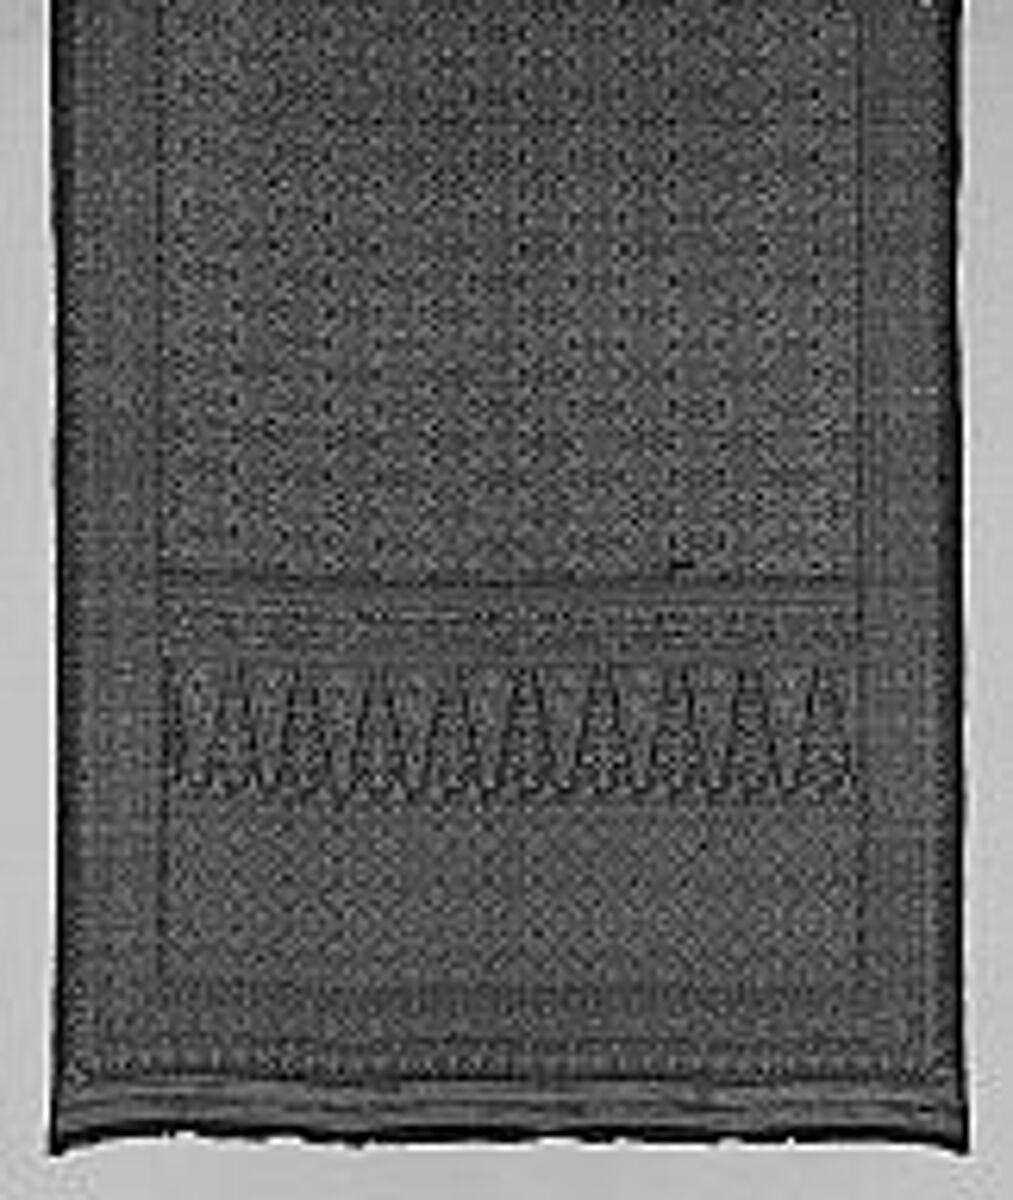 Sarong (Kain Sudji), Silk, metal thread, Palembang 